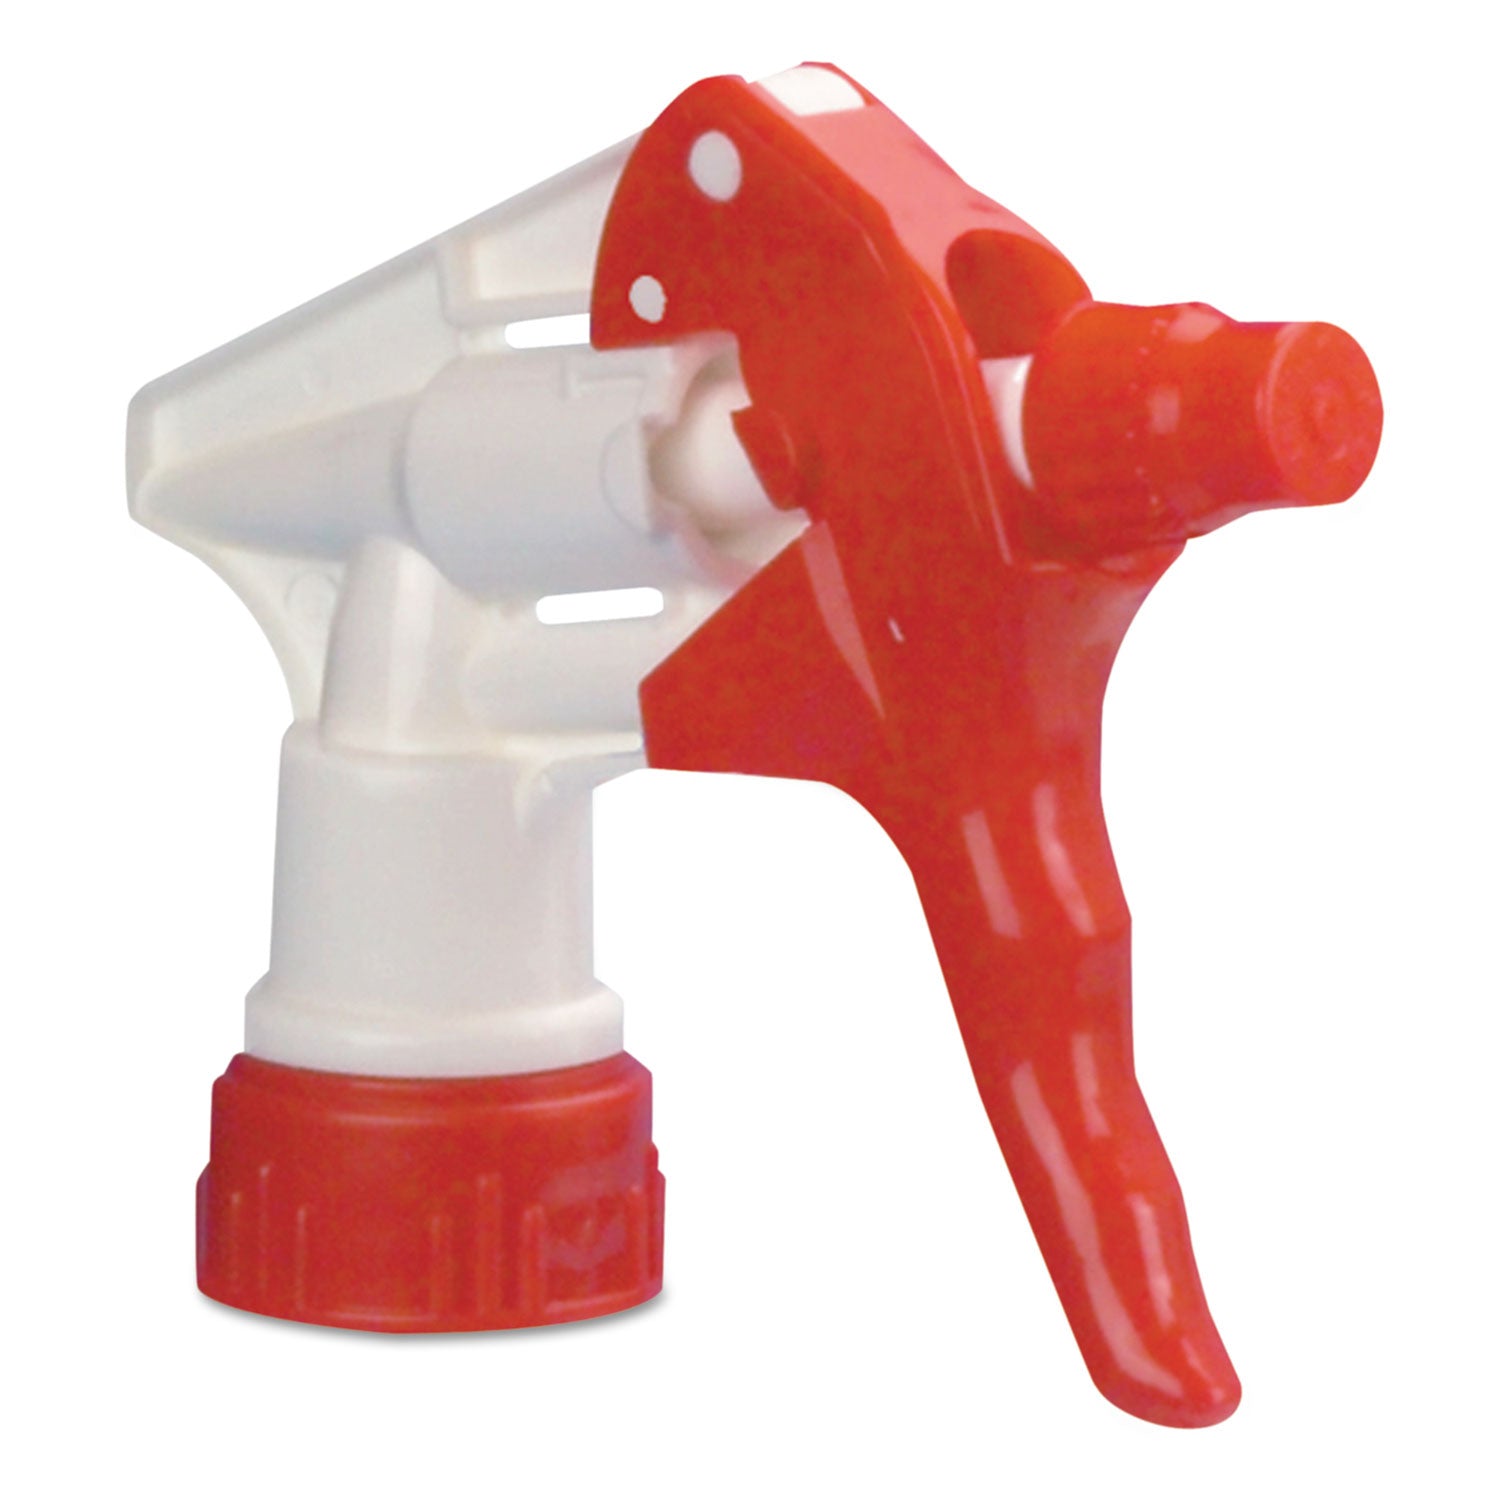 Trigger Sprayer 250, 9.25" Tube Fits 32 oz Bottles, Red/White, 24/Carton - 